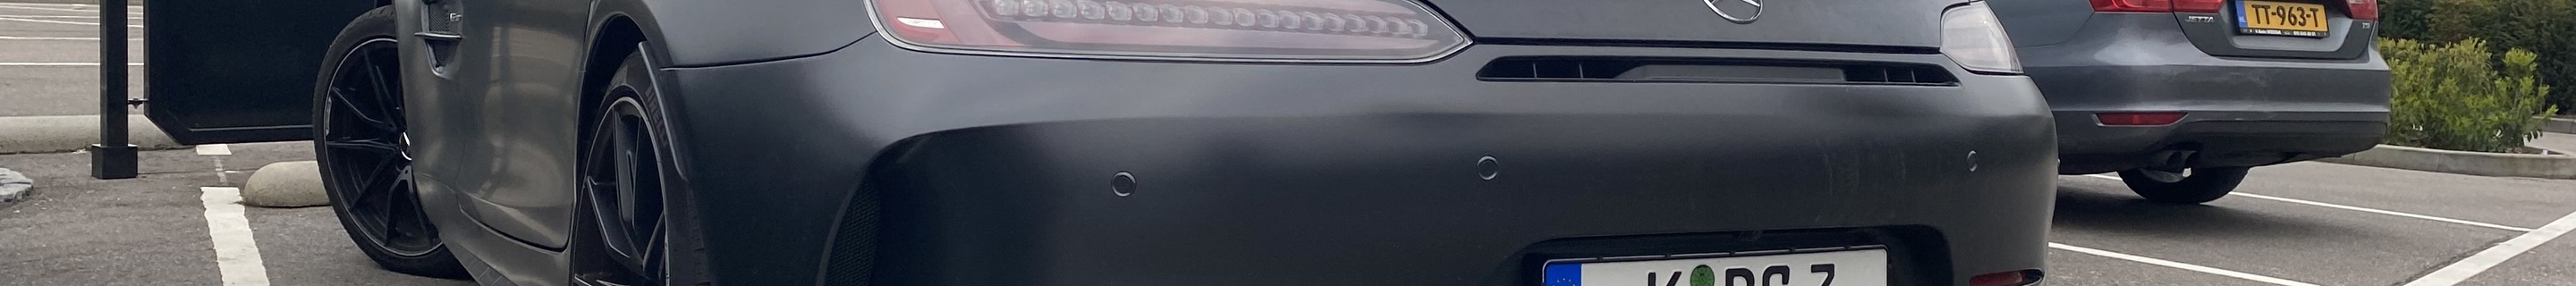 Mercedes-AMG GT R C190 2019